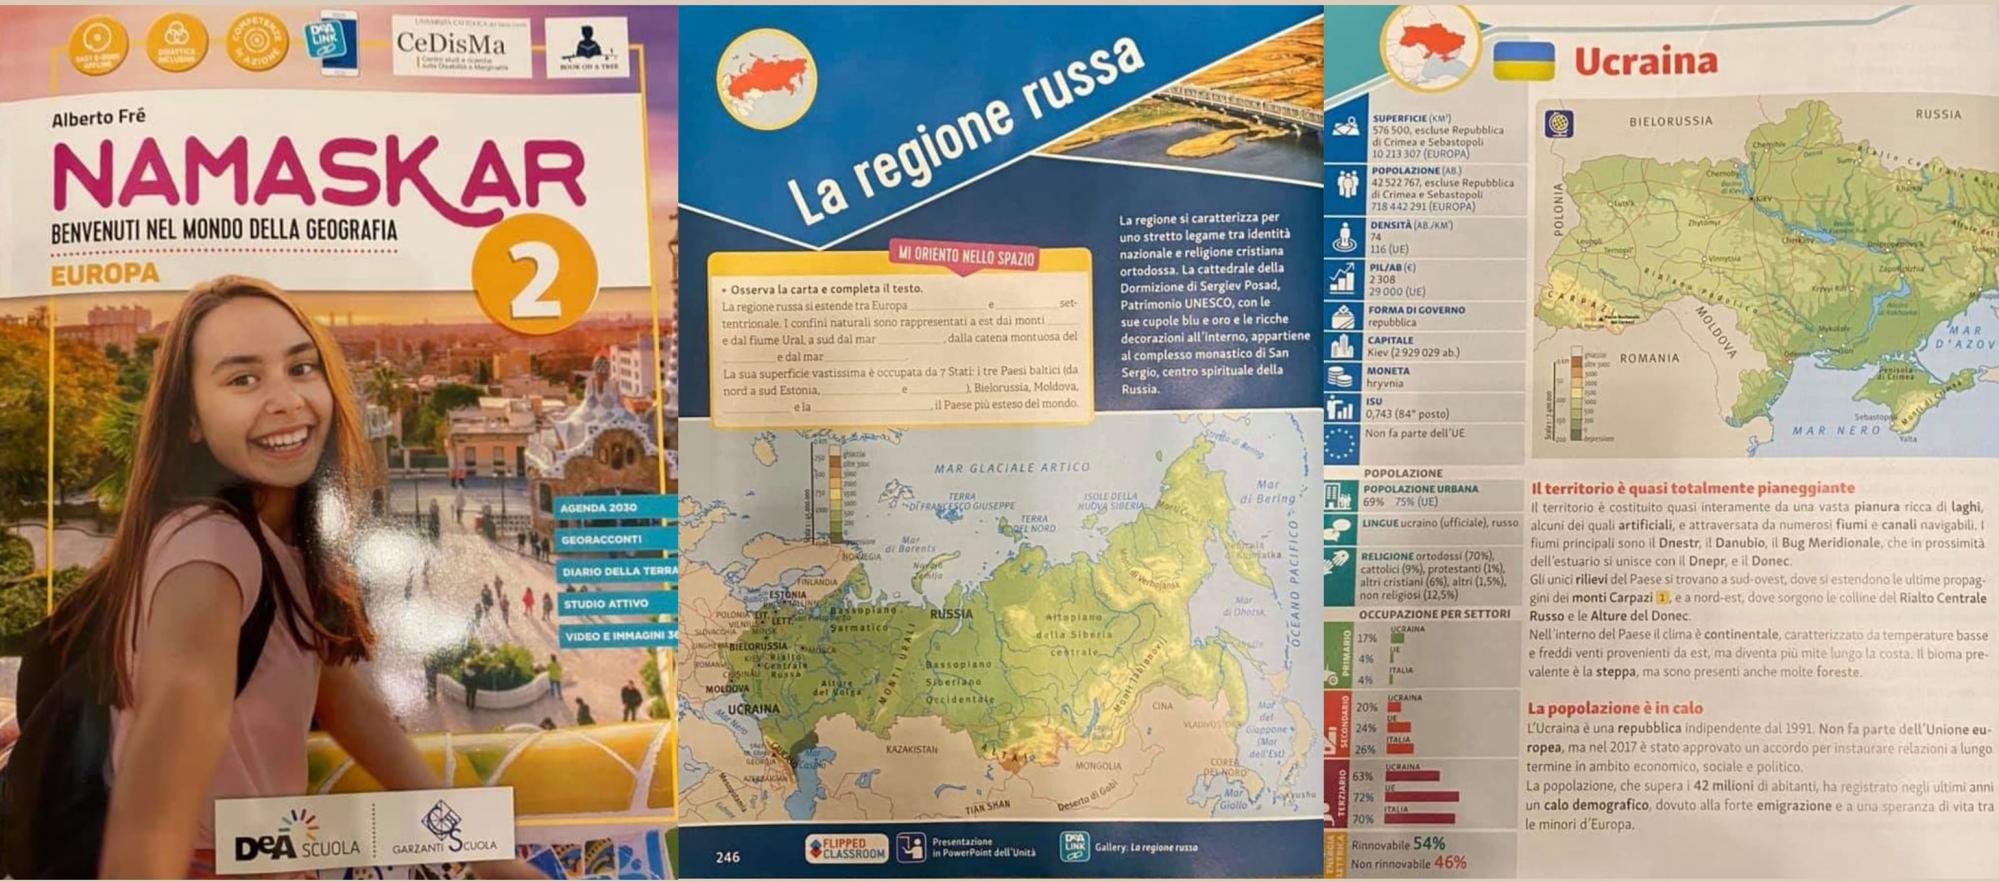 В итальянском учебнике по географии Украину причислили к регионам России: вспыхнул скандал